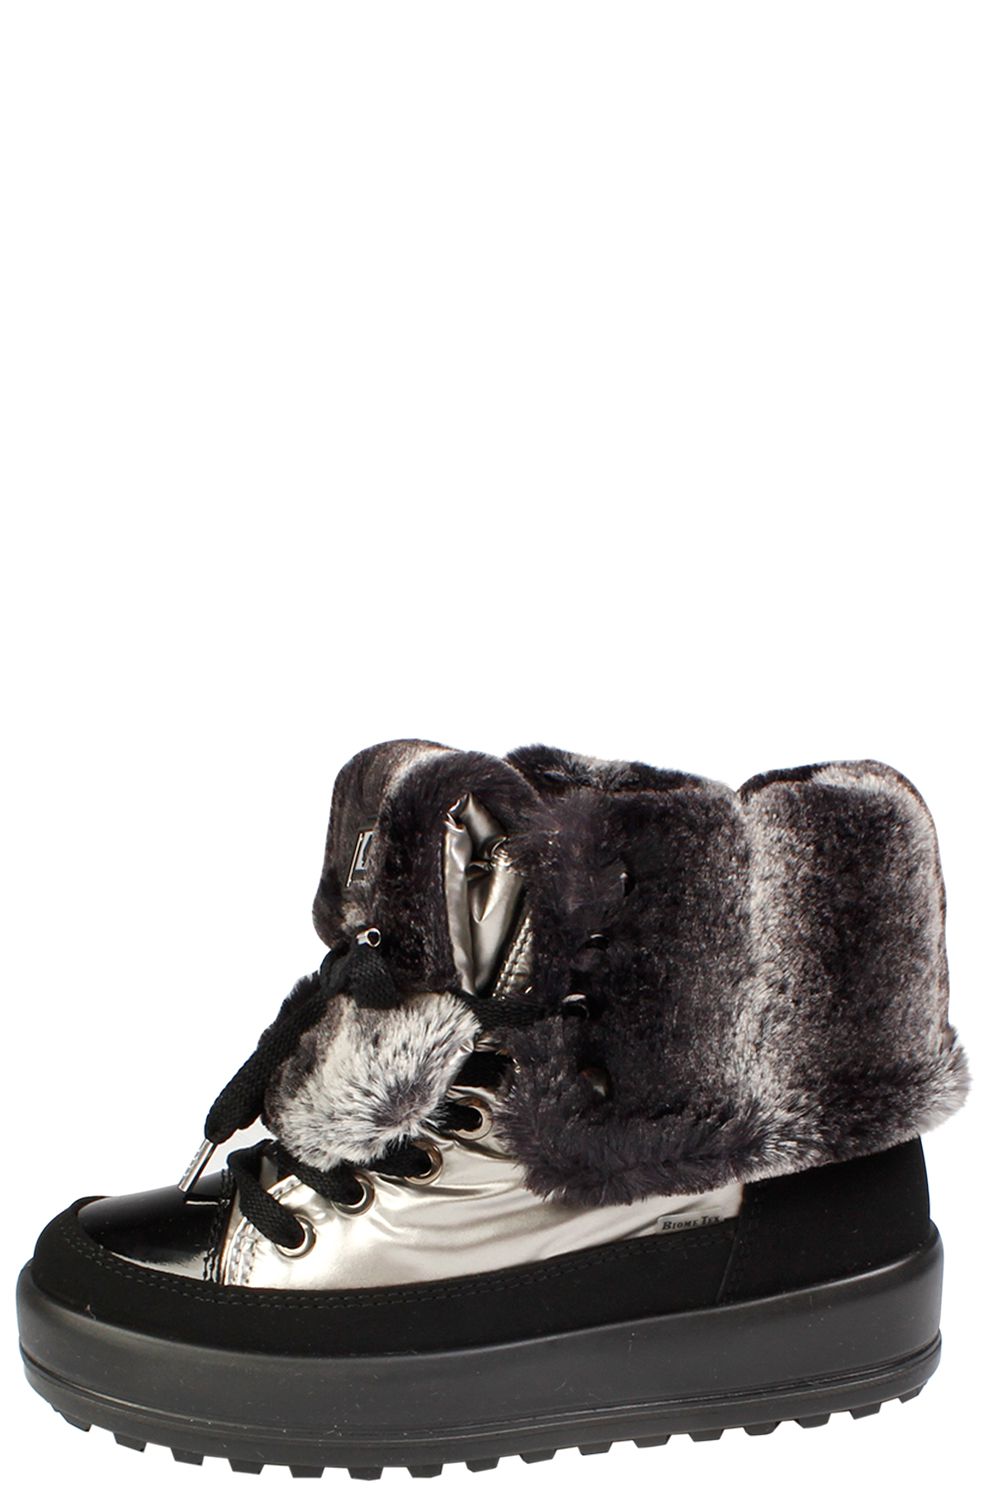 Ботинки JogDog, размер 37, цвет серый